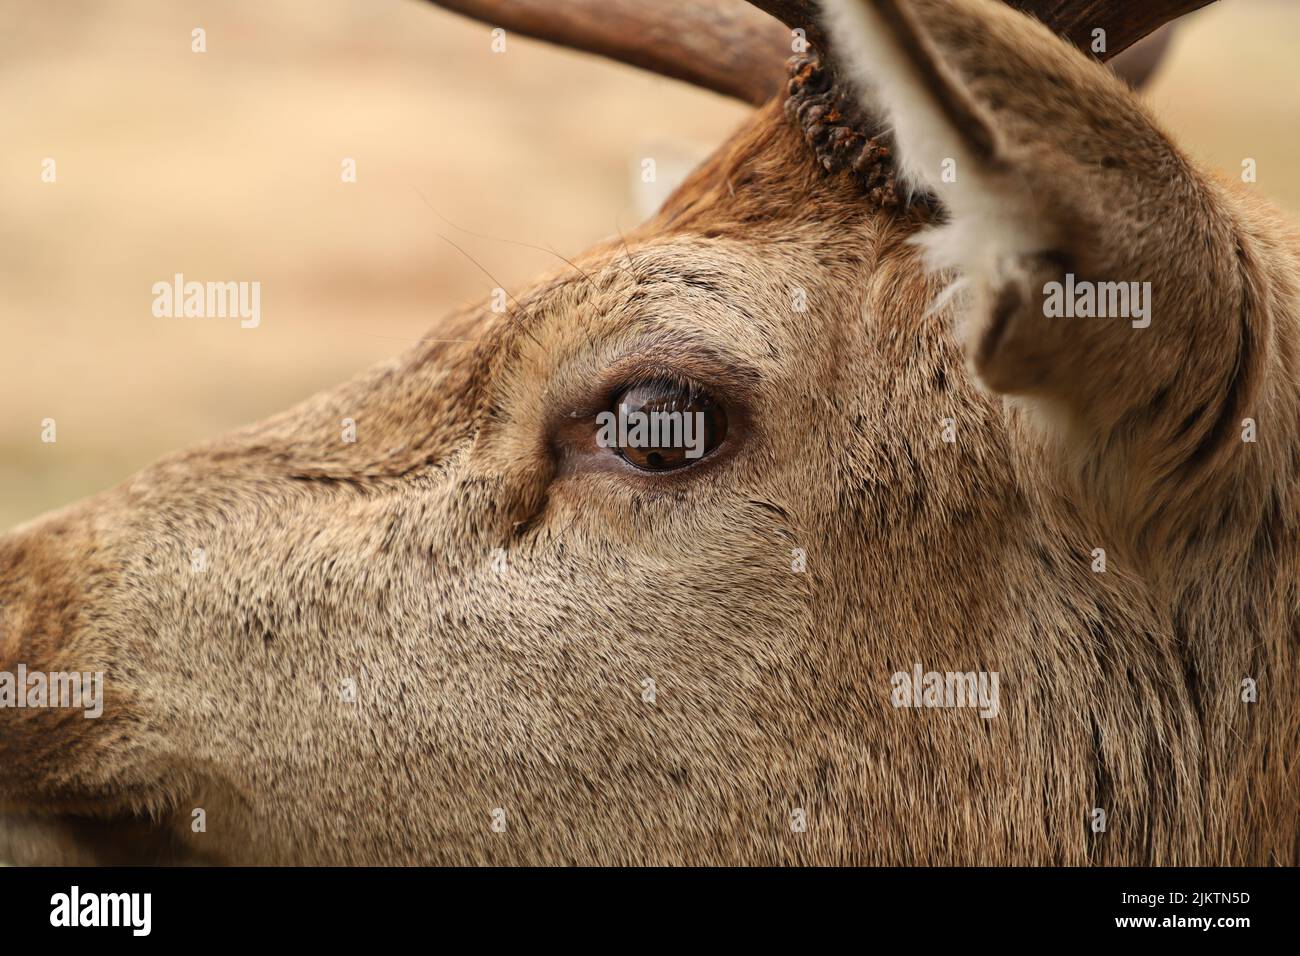 A closeup shot of a red deer head Stock Photo